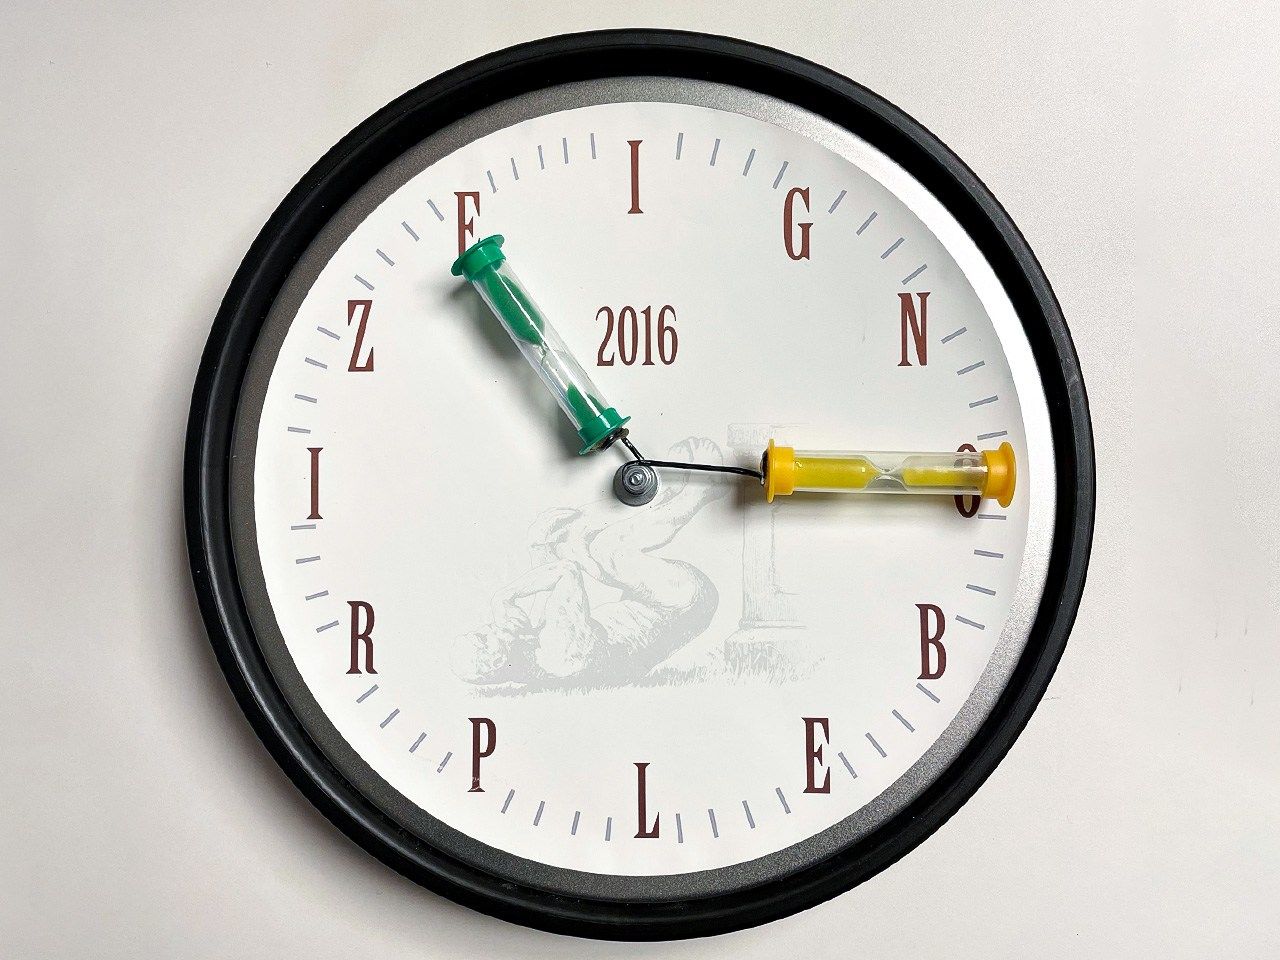 Reloj de 61 segundos que se entregó a los galardonados en los Ig Nobel de 2016.